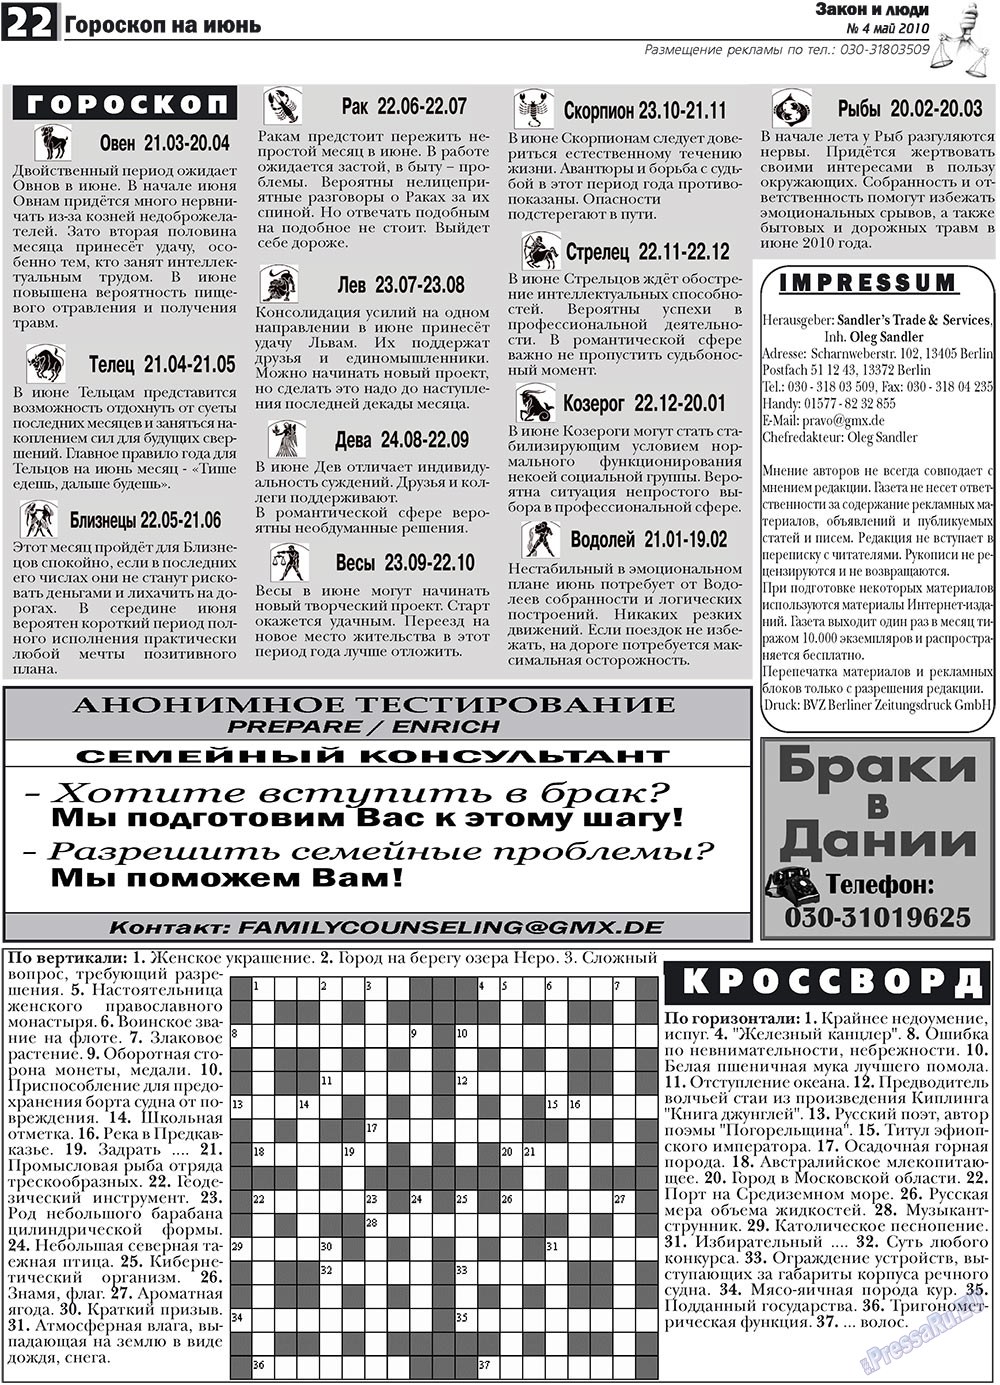 Закон и люди, газета. 2010 №4 стр.22